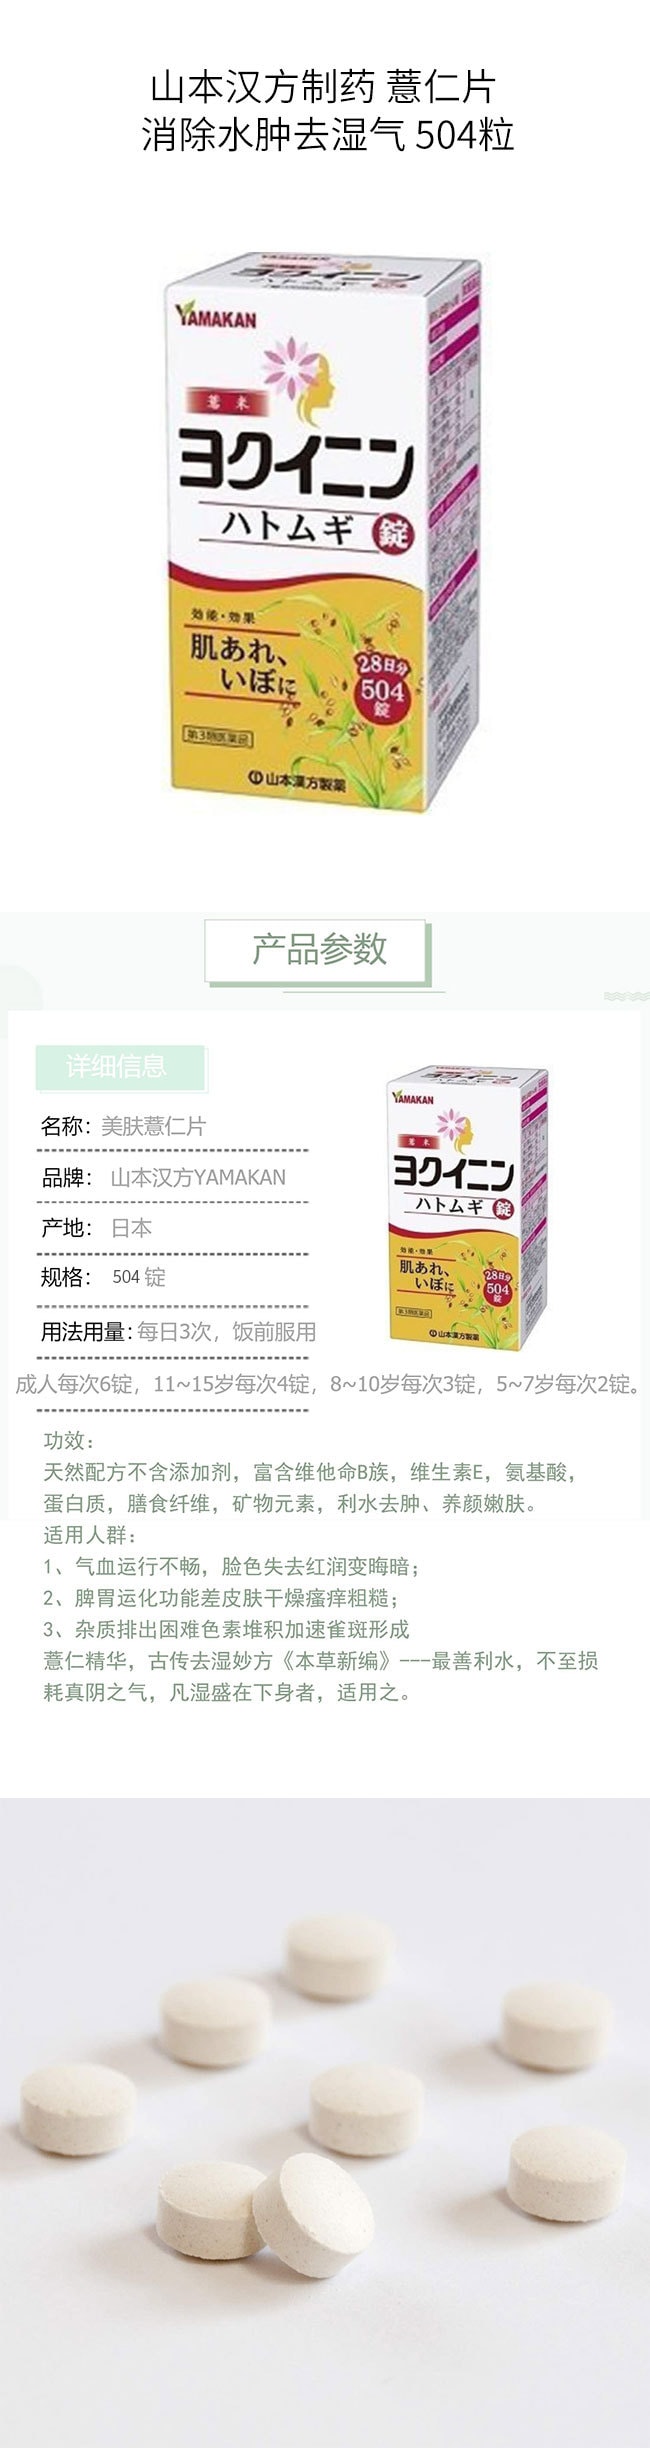 【日本直邮】YAMAMOTO 山本汉方制药 薏仁片 消除水肿去湿气 504粒